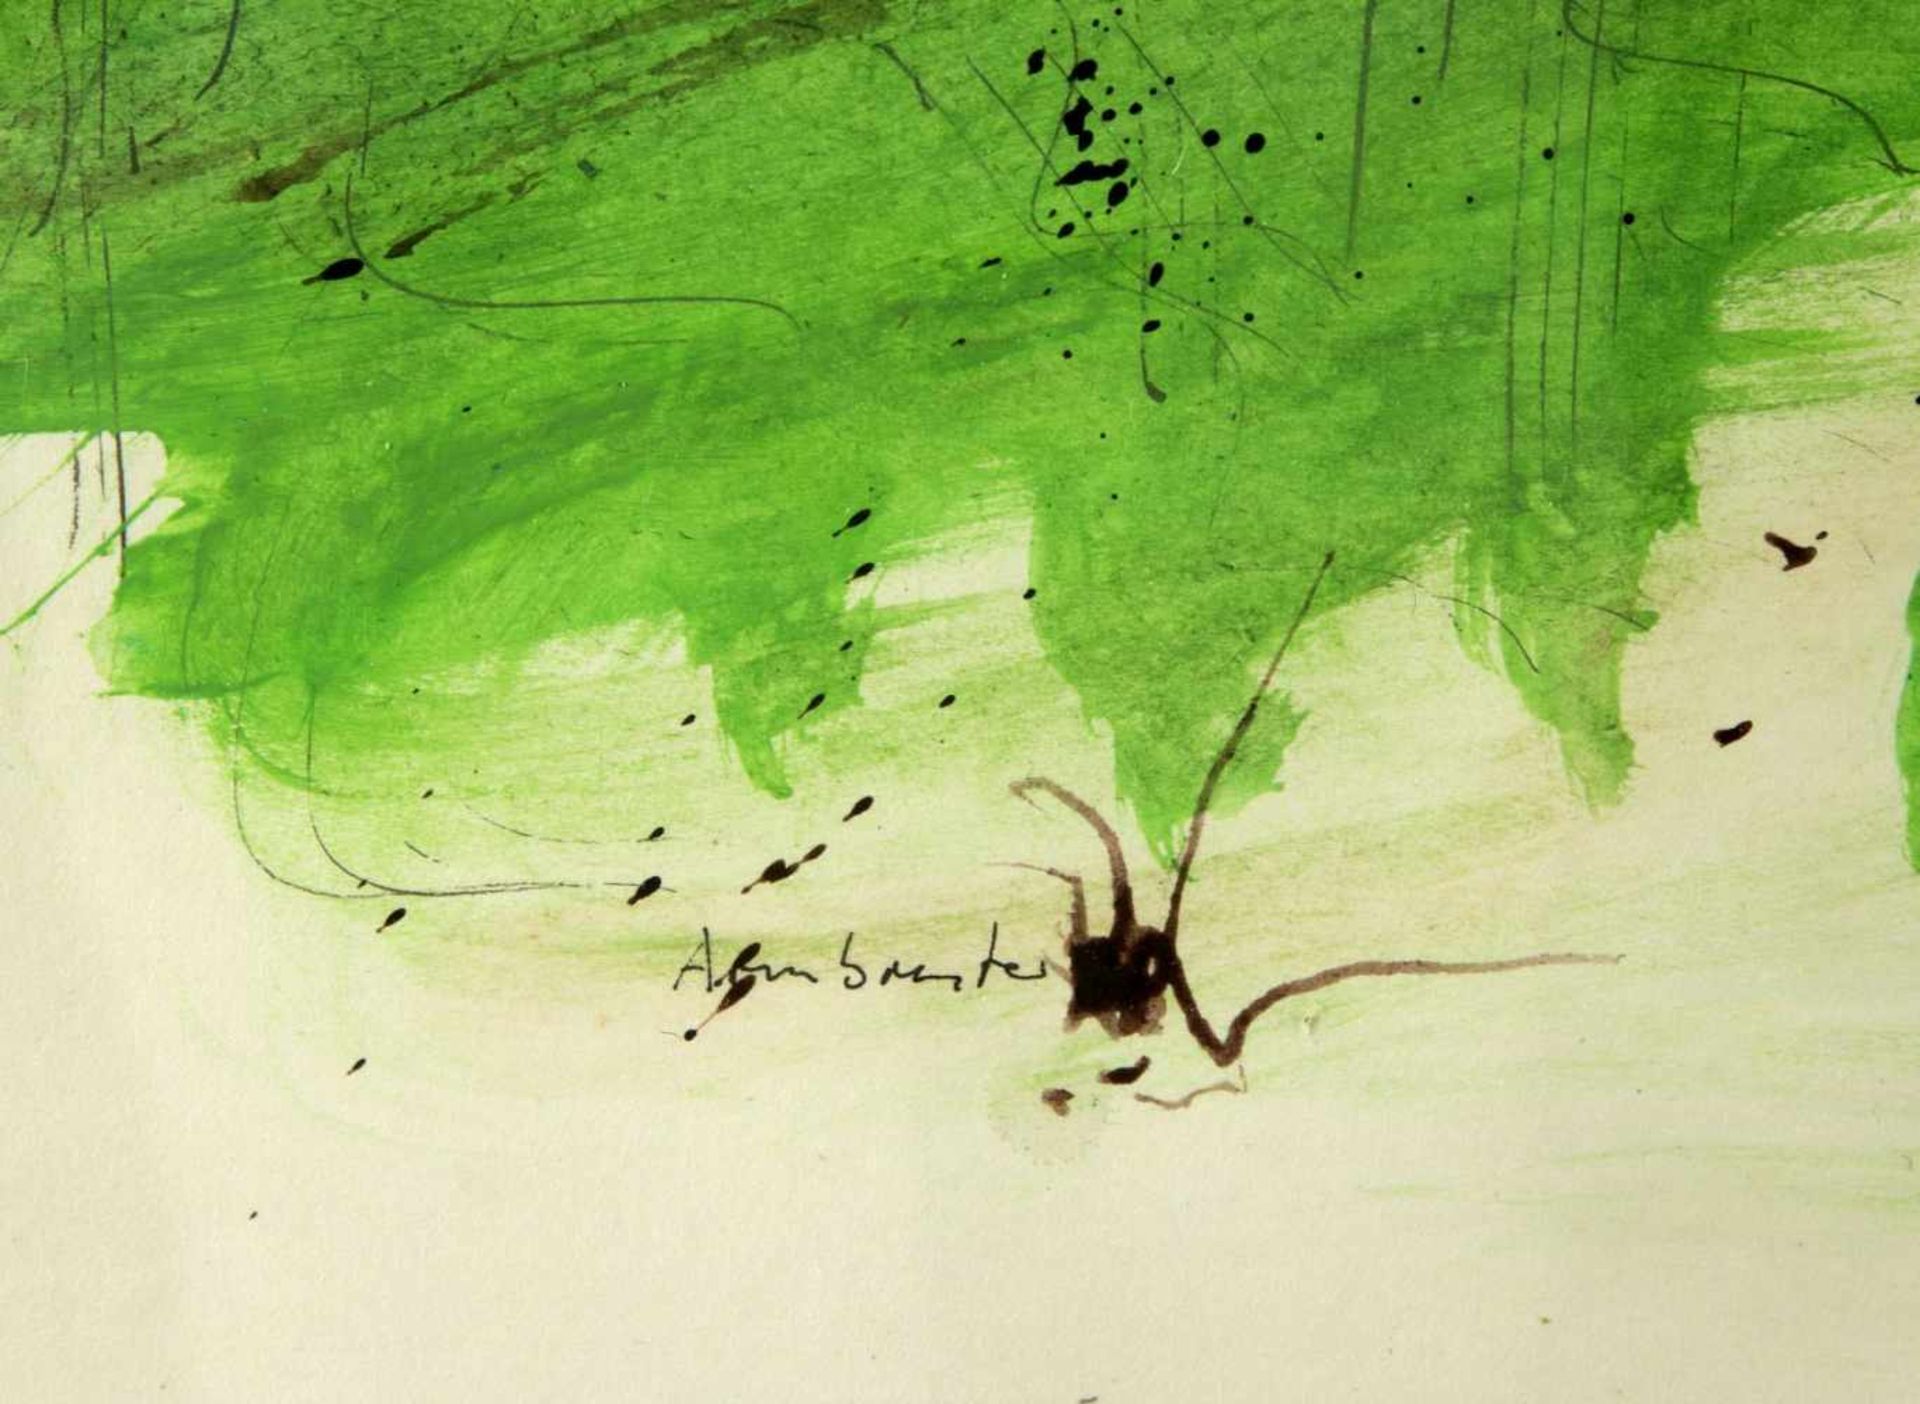 ArmbrusterAbstrahierte Figuren in einer grünen Landschaft. Aquarell und Tusche. Sign. 58 x 87 cm. - Bild 2 aus 2